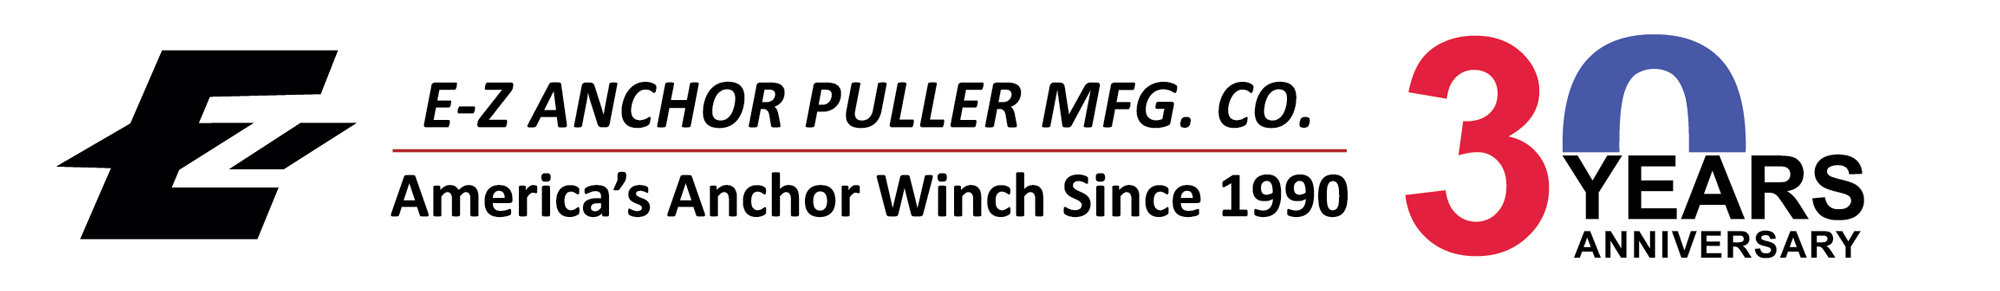 E-Z Anchor Puller MFG. CO. logo